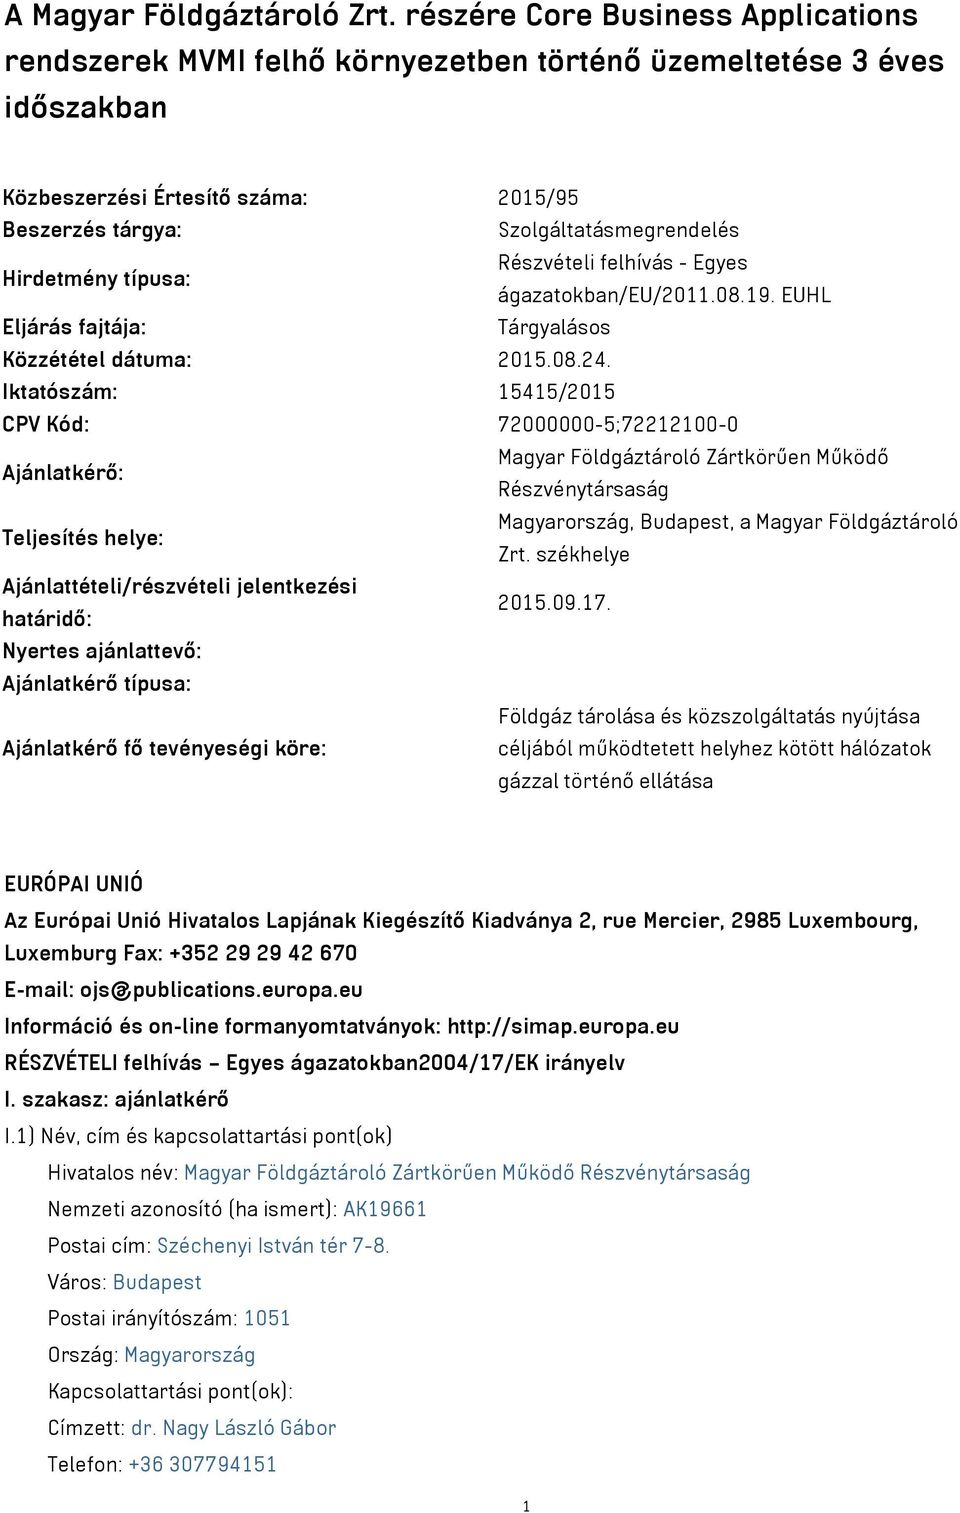 típusa: Részvételi felhívás - Egyes ágazatokban/eu/2011.08.19. EUHL Eljárás fajtája: Tárgyalásos Közzététel dátuma: 2015.08.24.